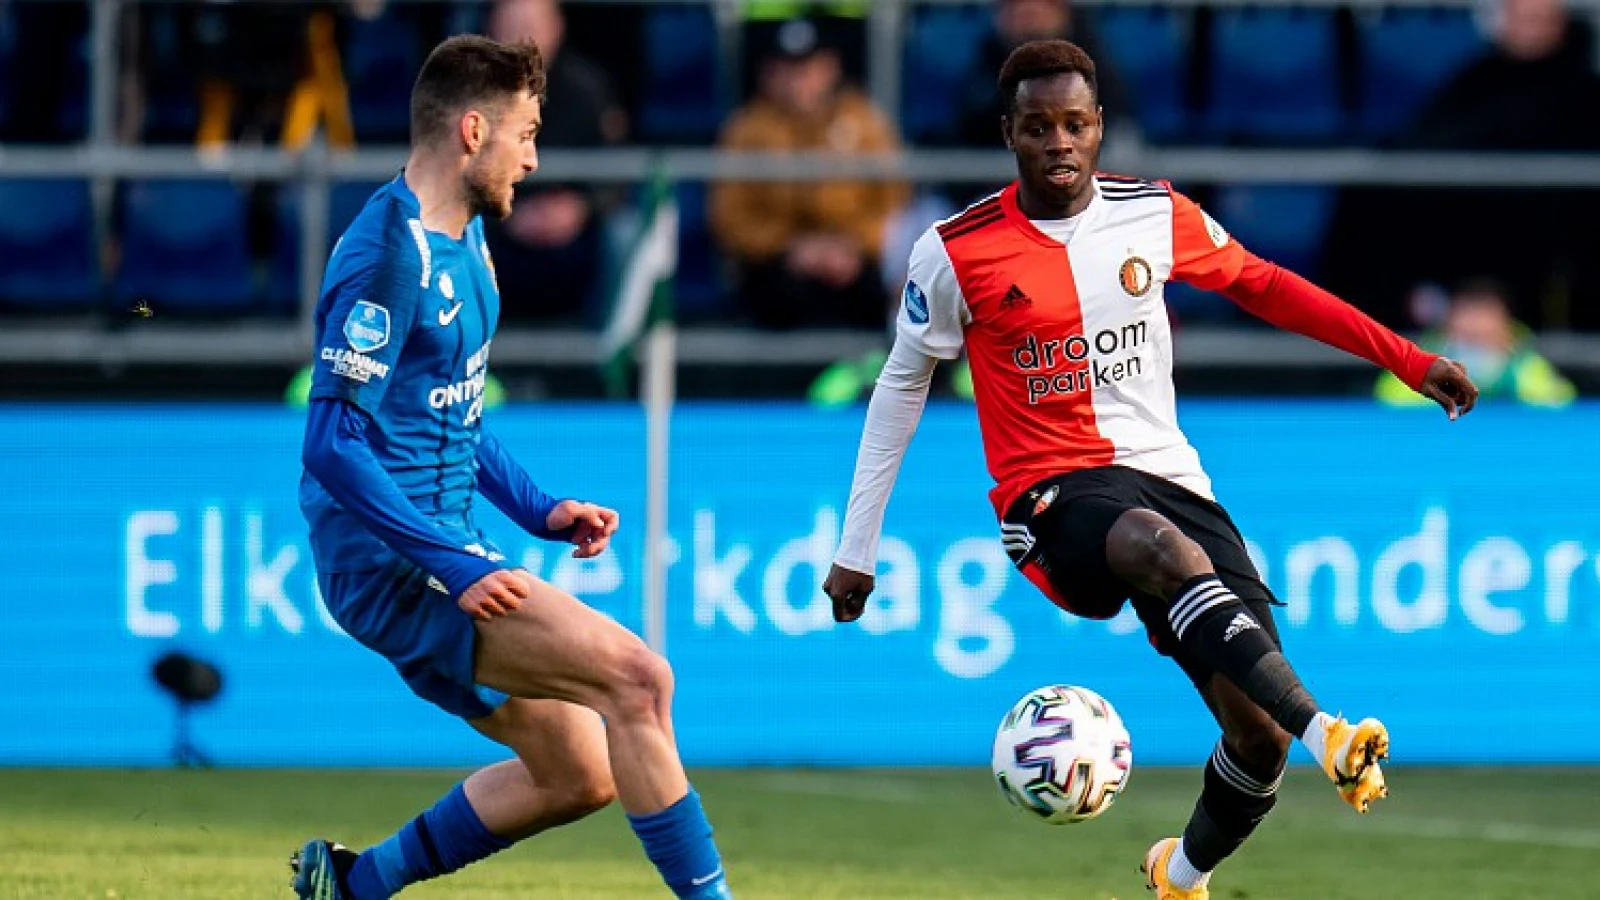 OFFICIEEL | Baldé op huurbasis naar FC Dordrecht